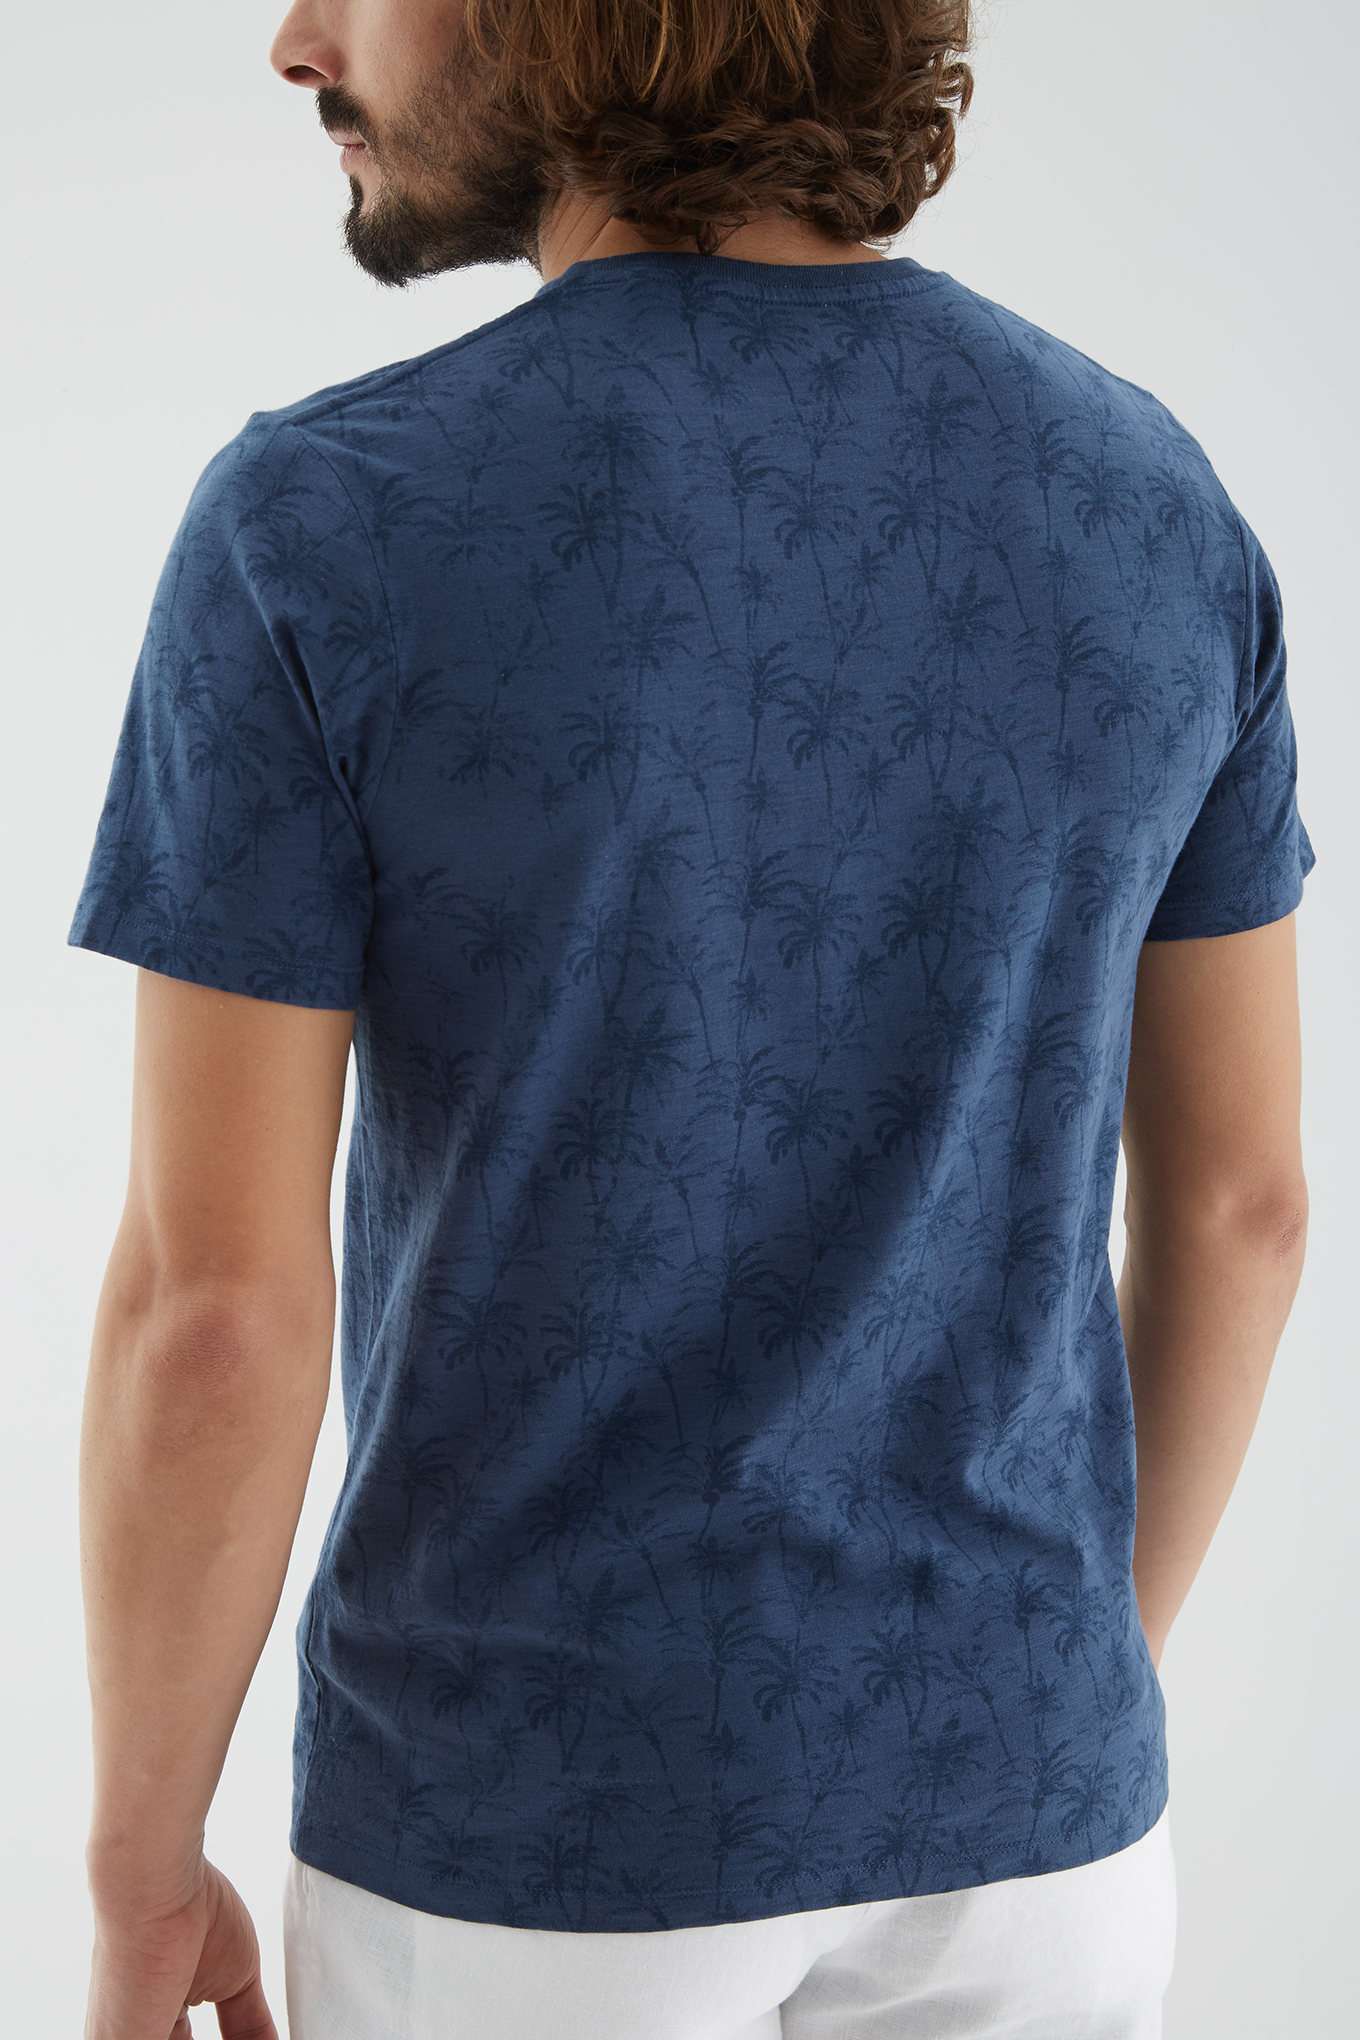 T-Shirt Azul Sport Homem